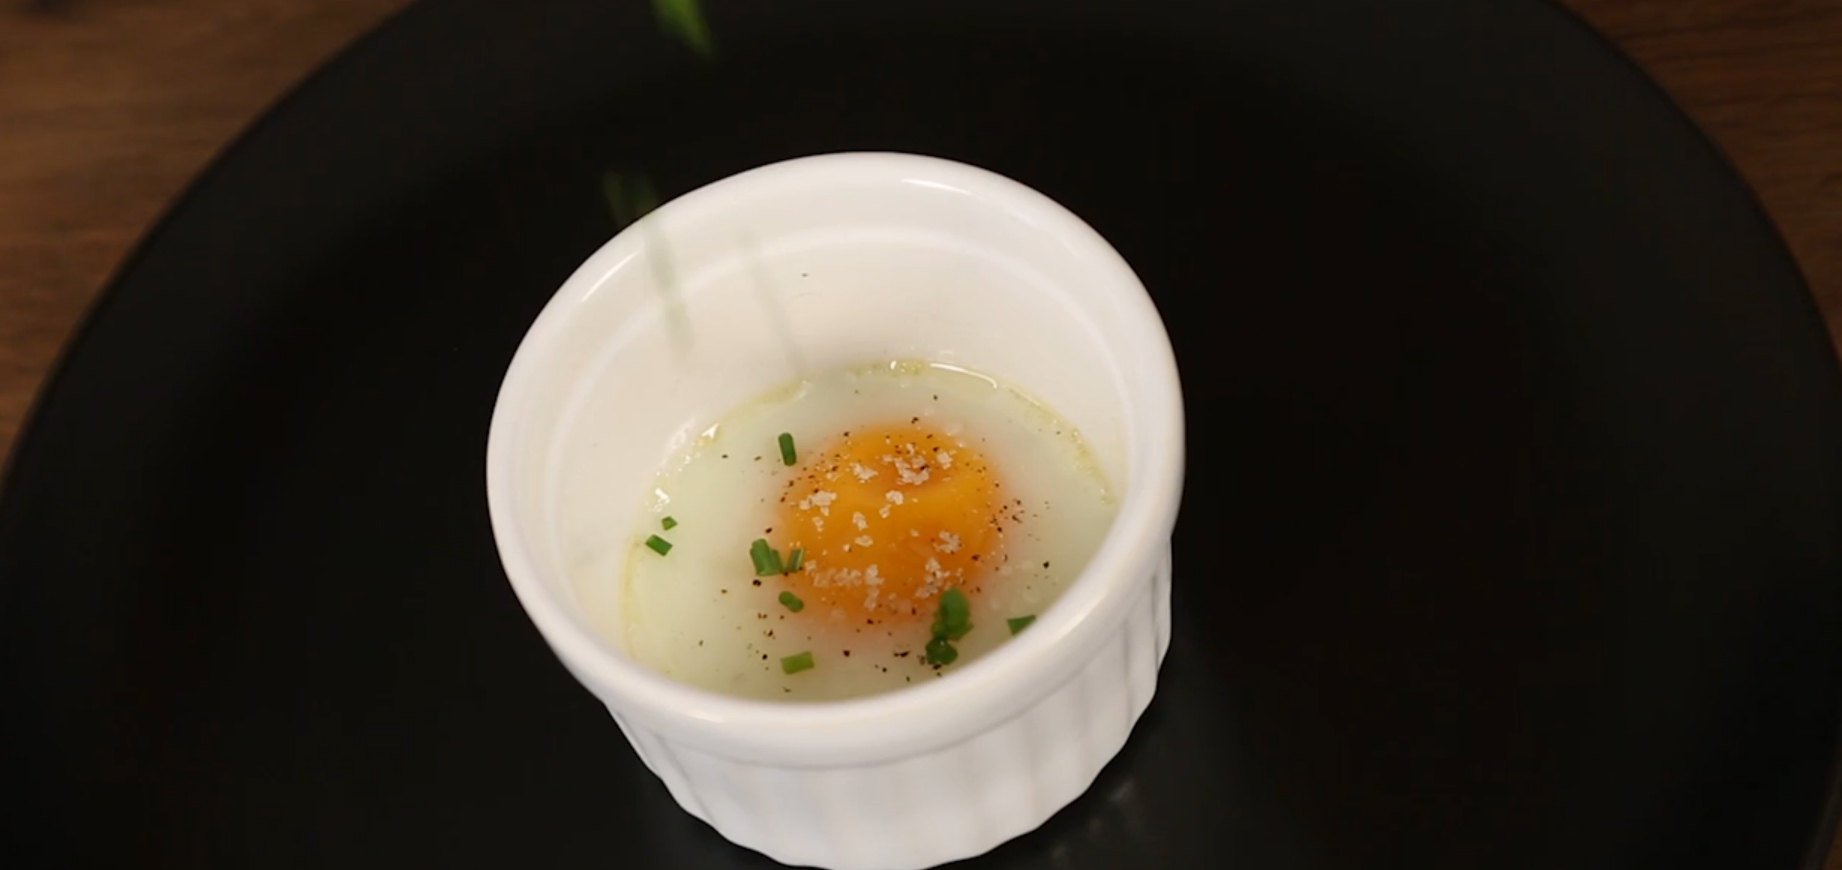 Mini cocottes cerise en céramique - recette d'œufs en cocotte